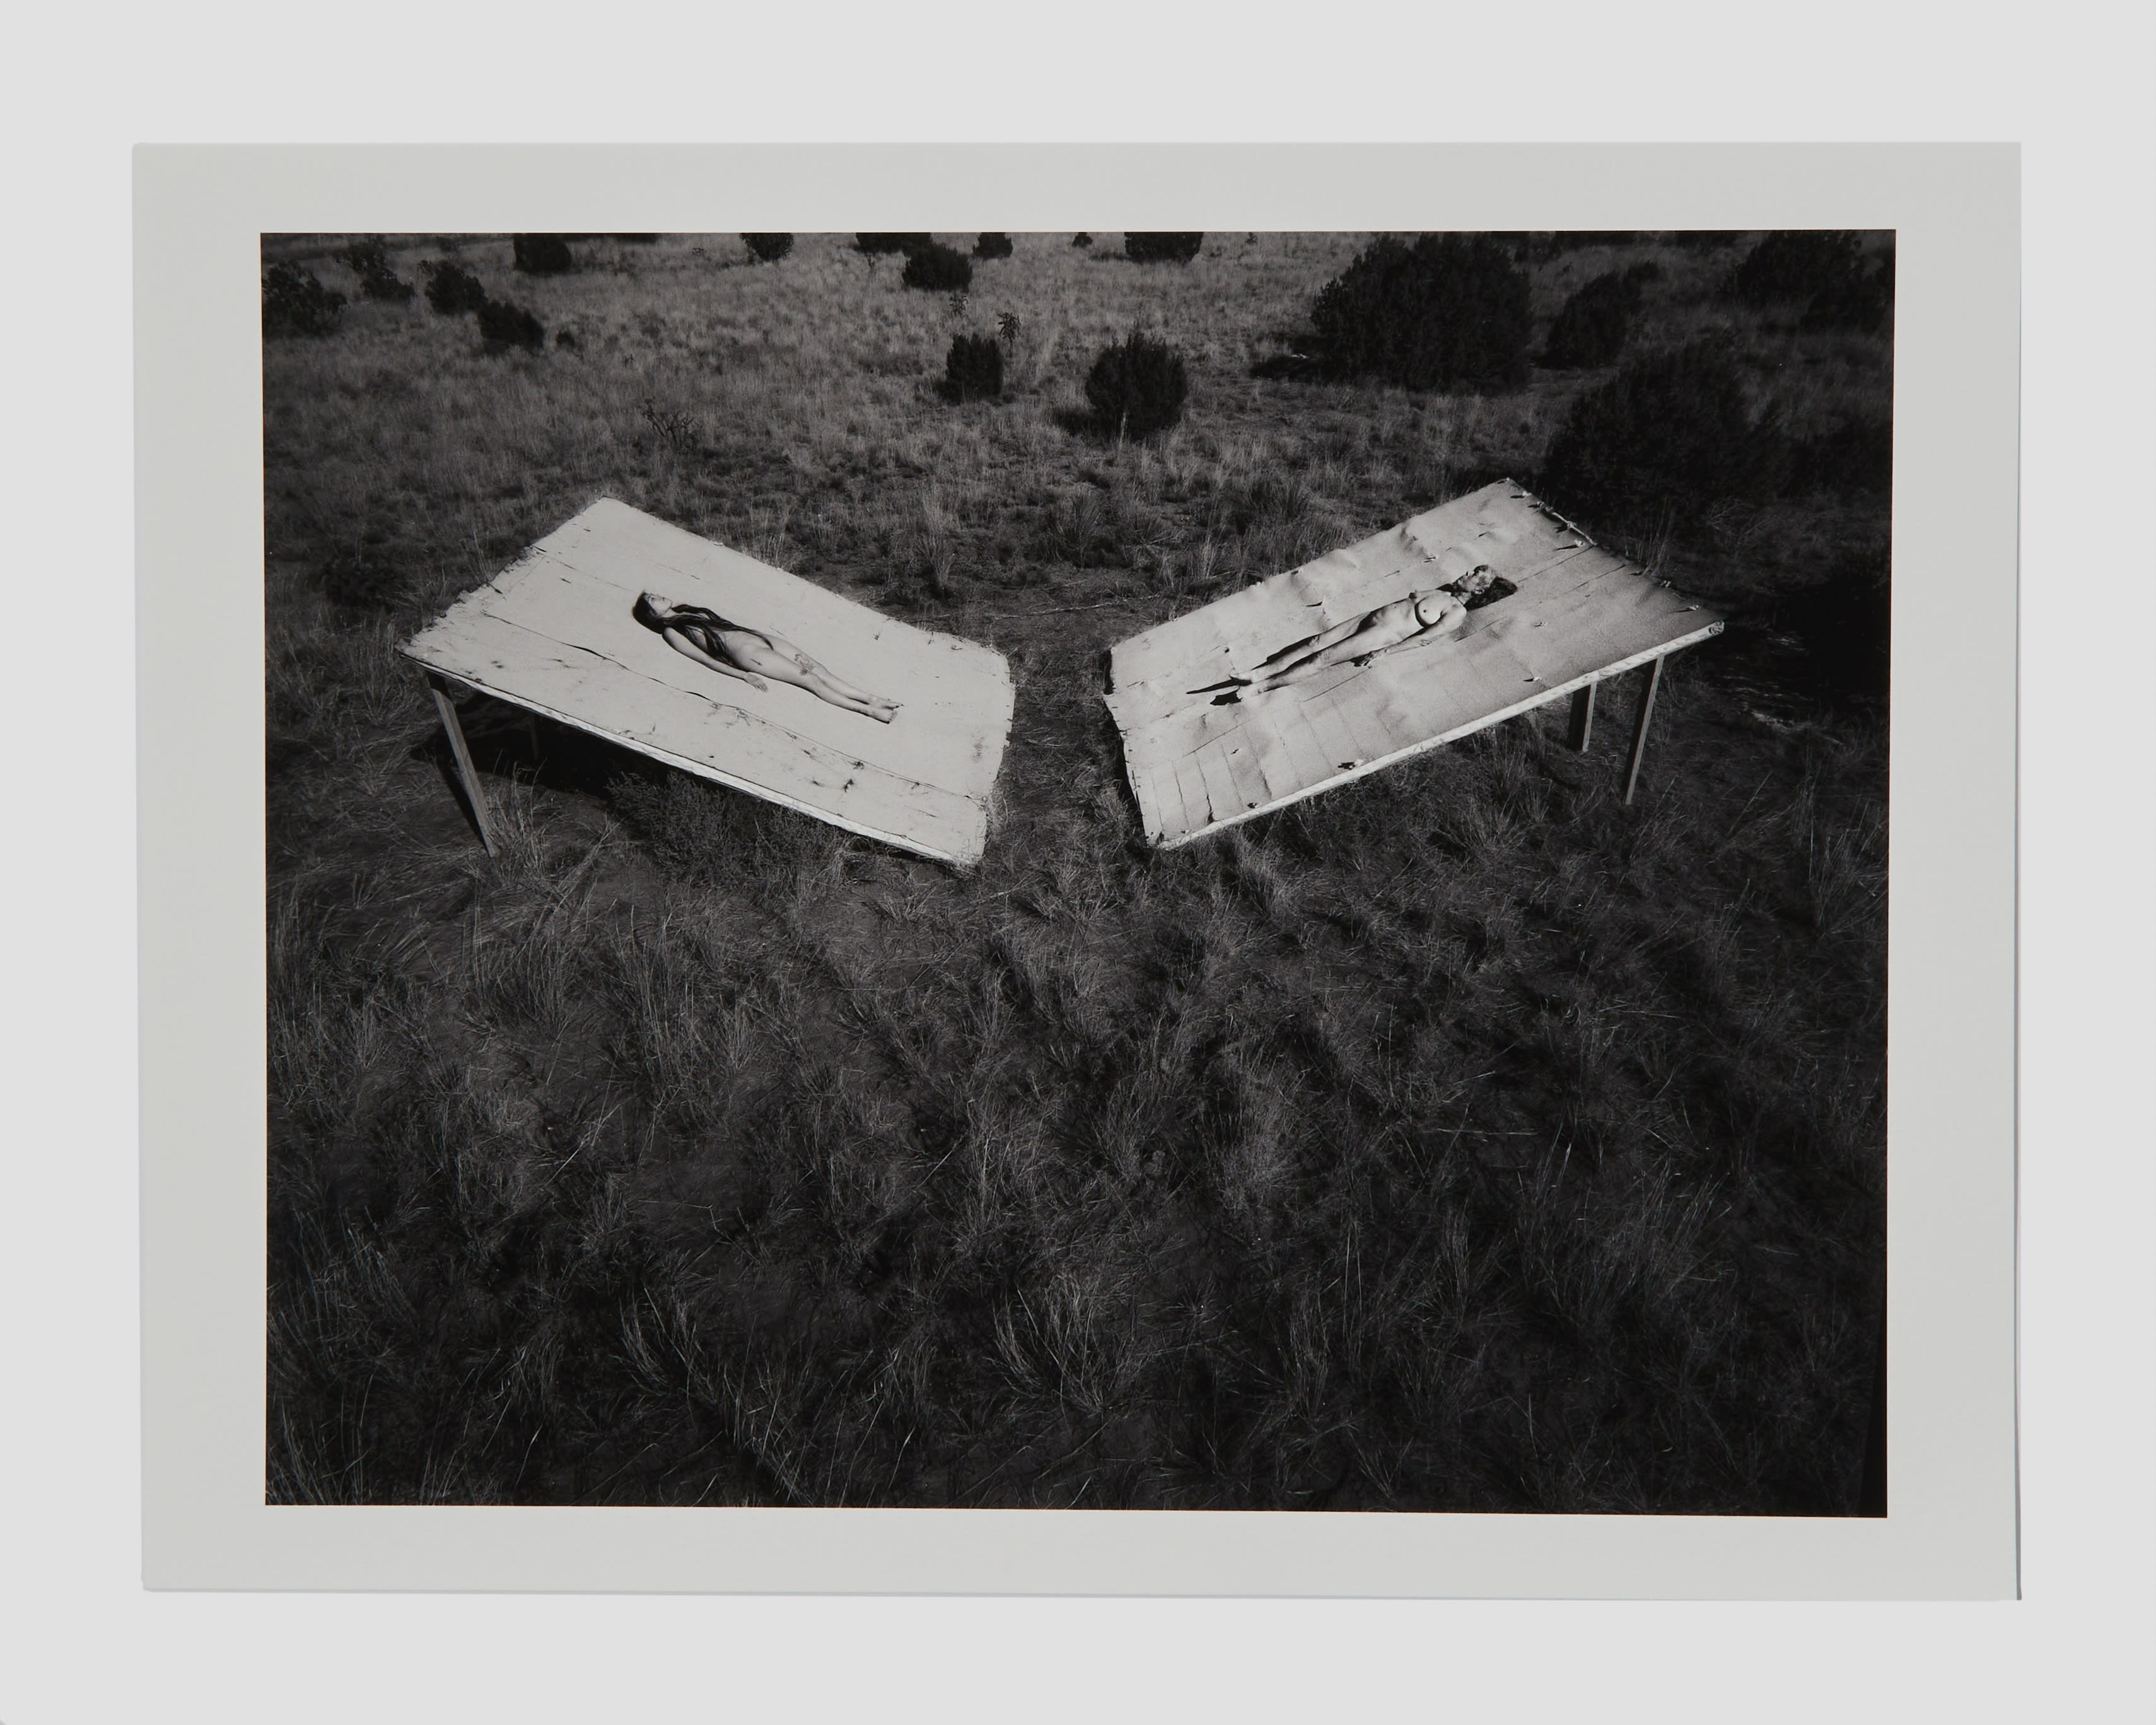 Two women lying in a field